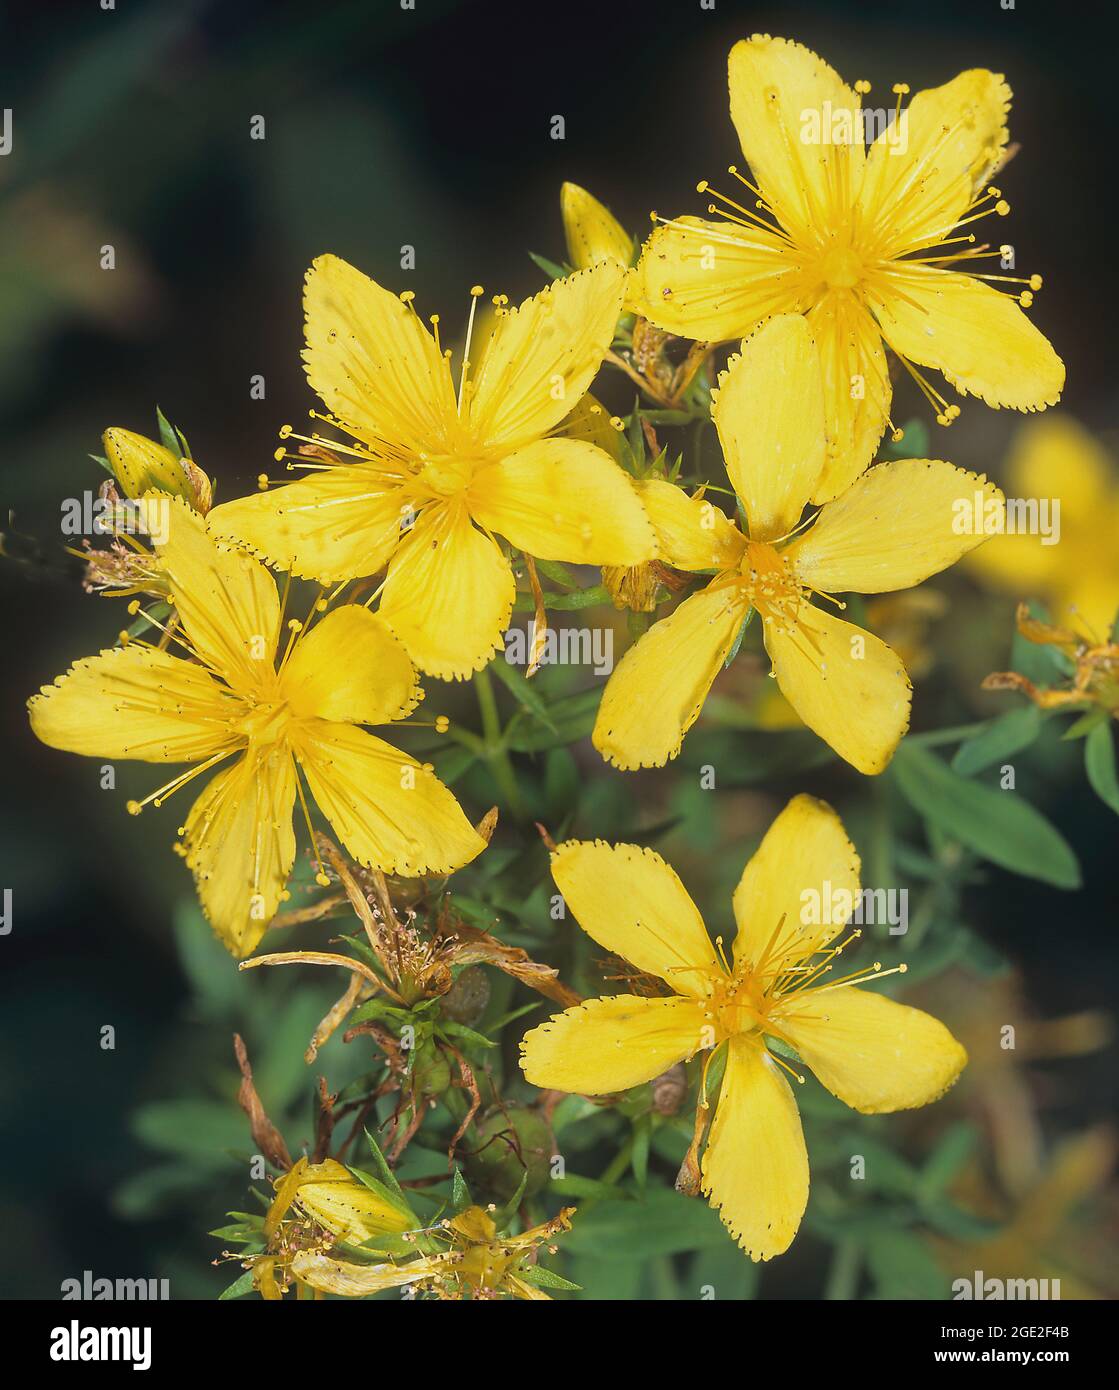 Hierba de San Juan (Hypericum perforatum). Inflorescencia con varias flores individuales. Alemania Foto de stock